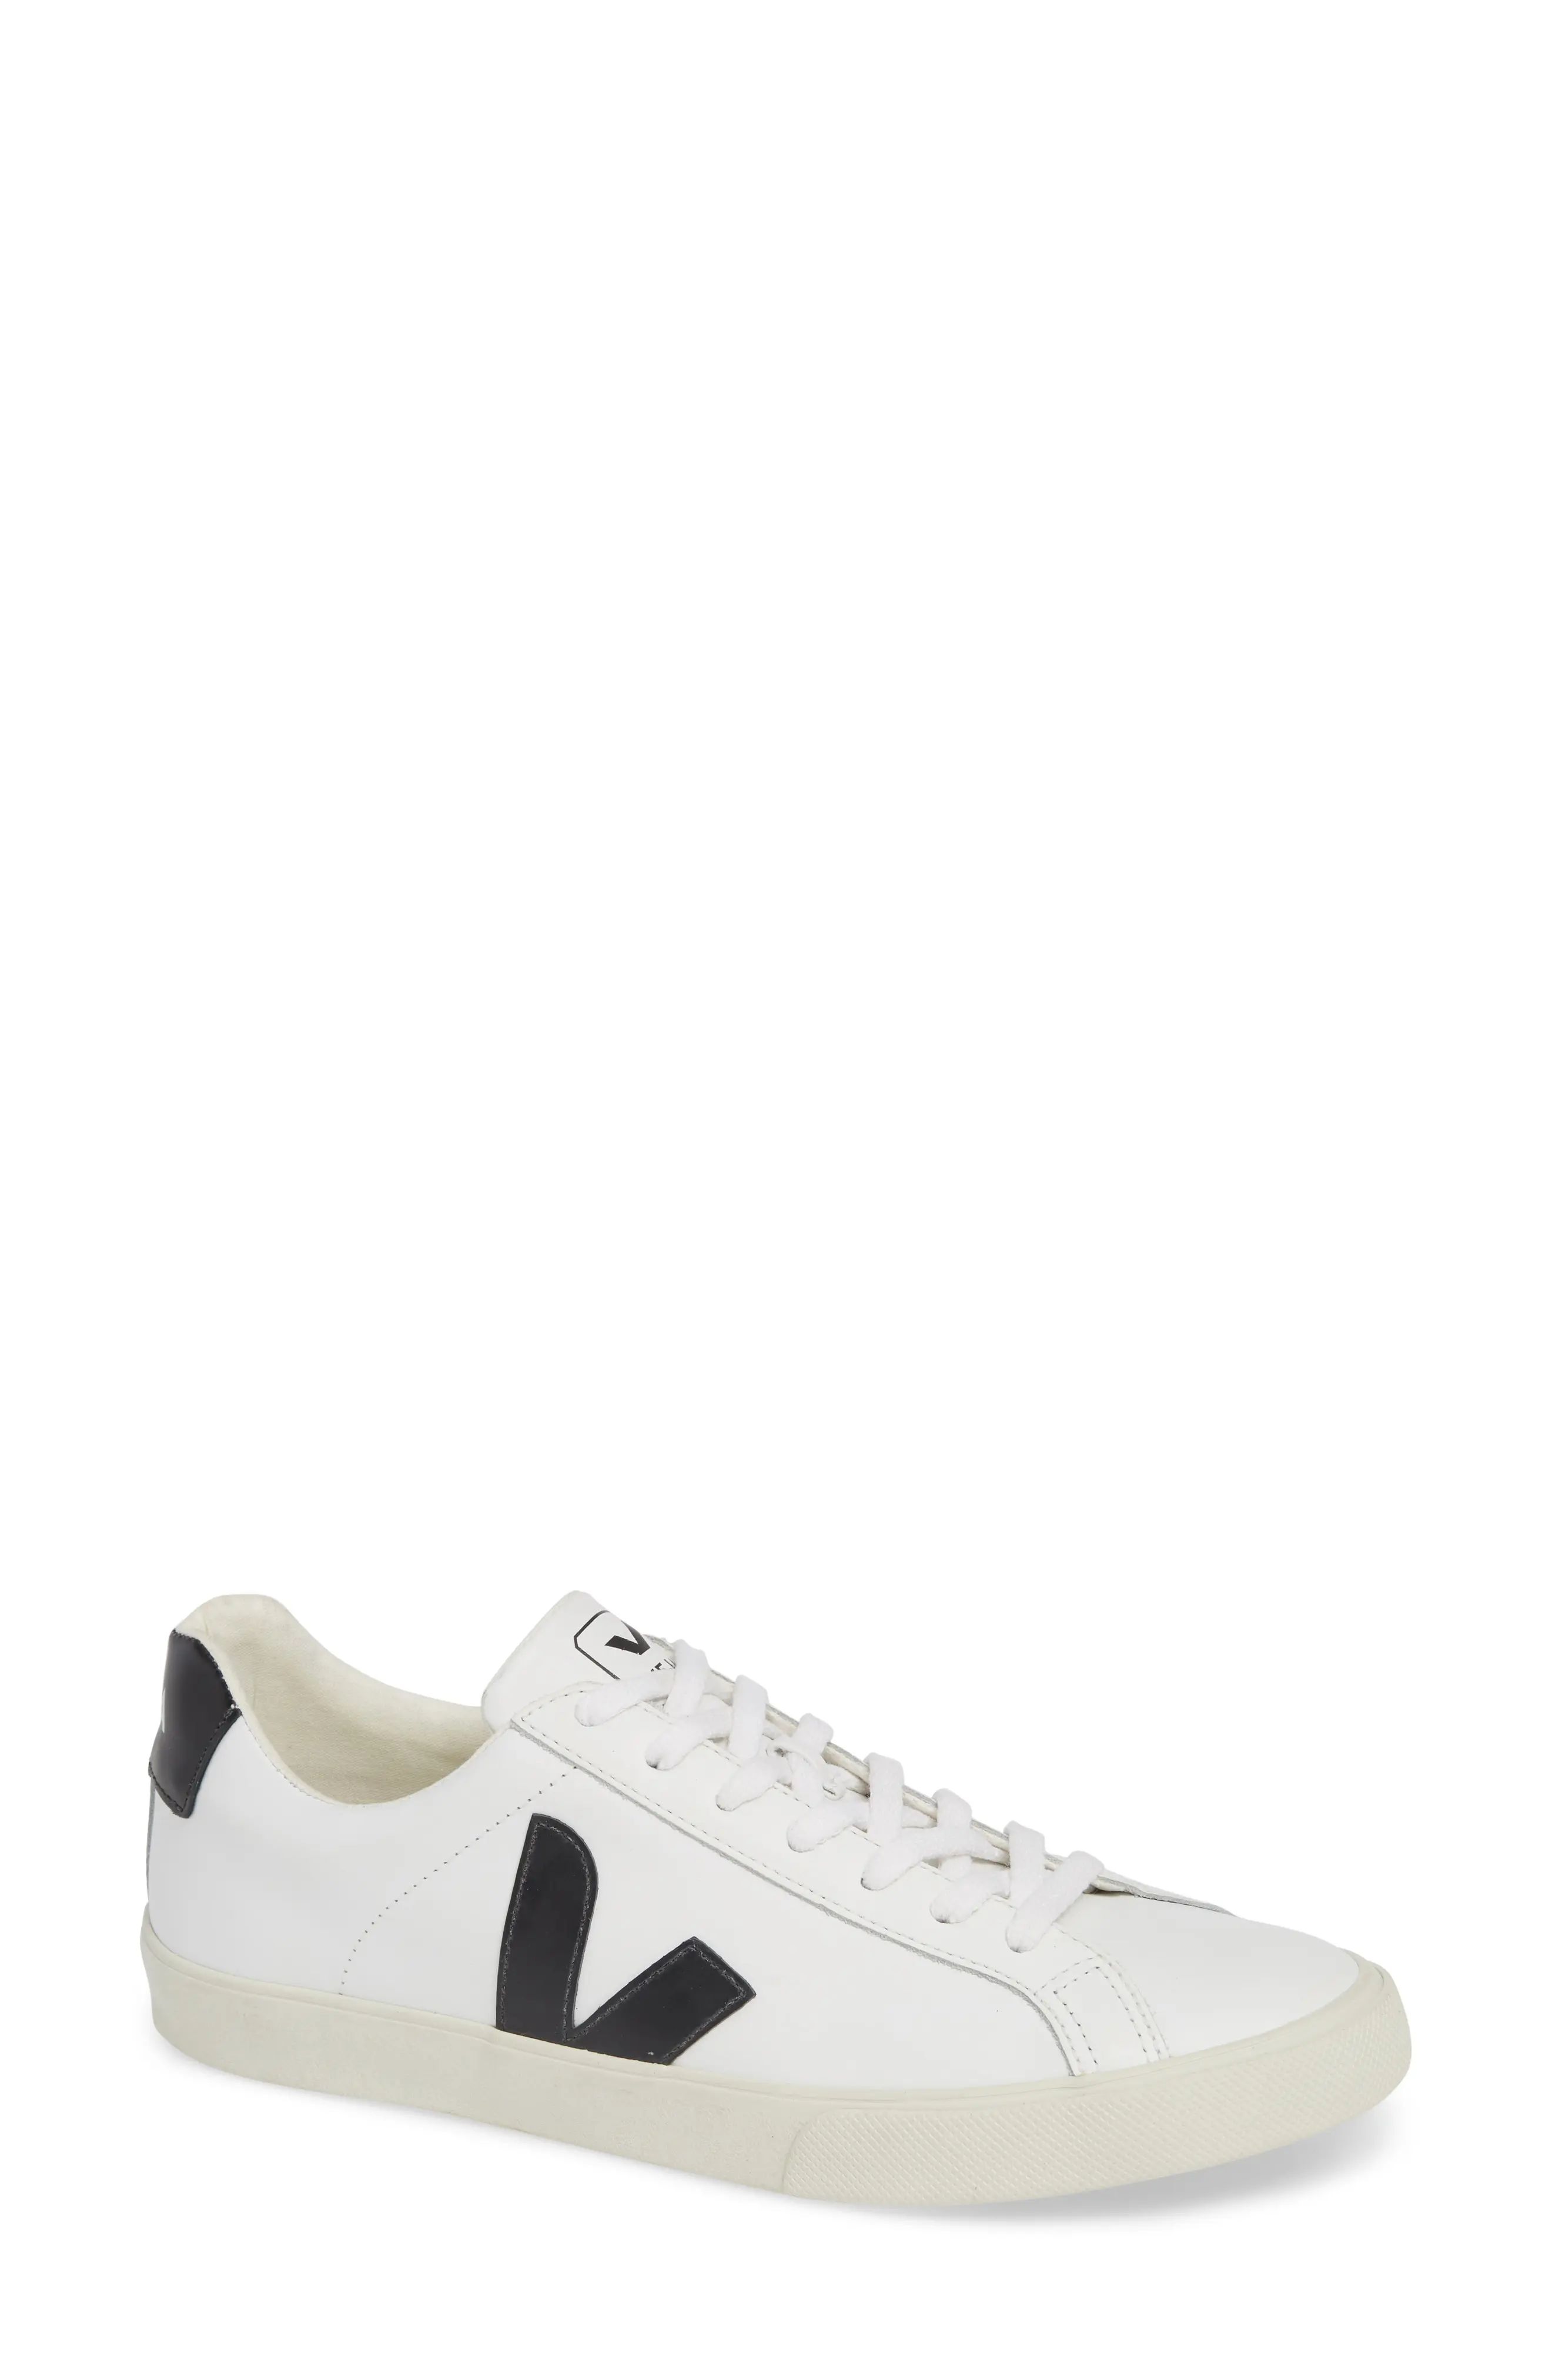 Veja Espalar Sneaker in Extra White Black at Nordstrom, Size 40Eu | Nordstrom